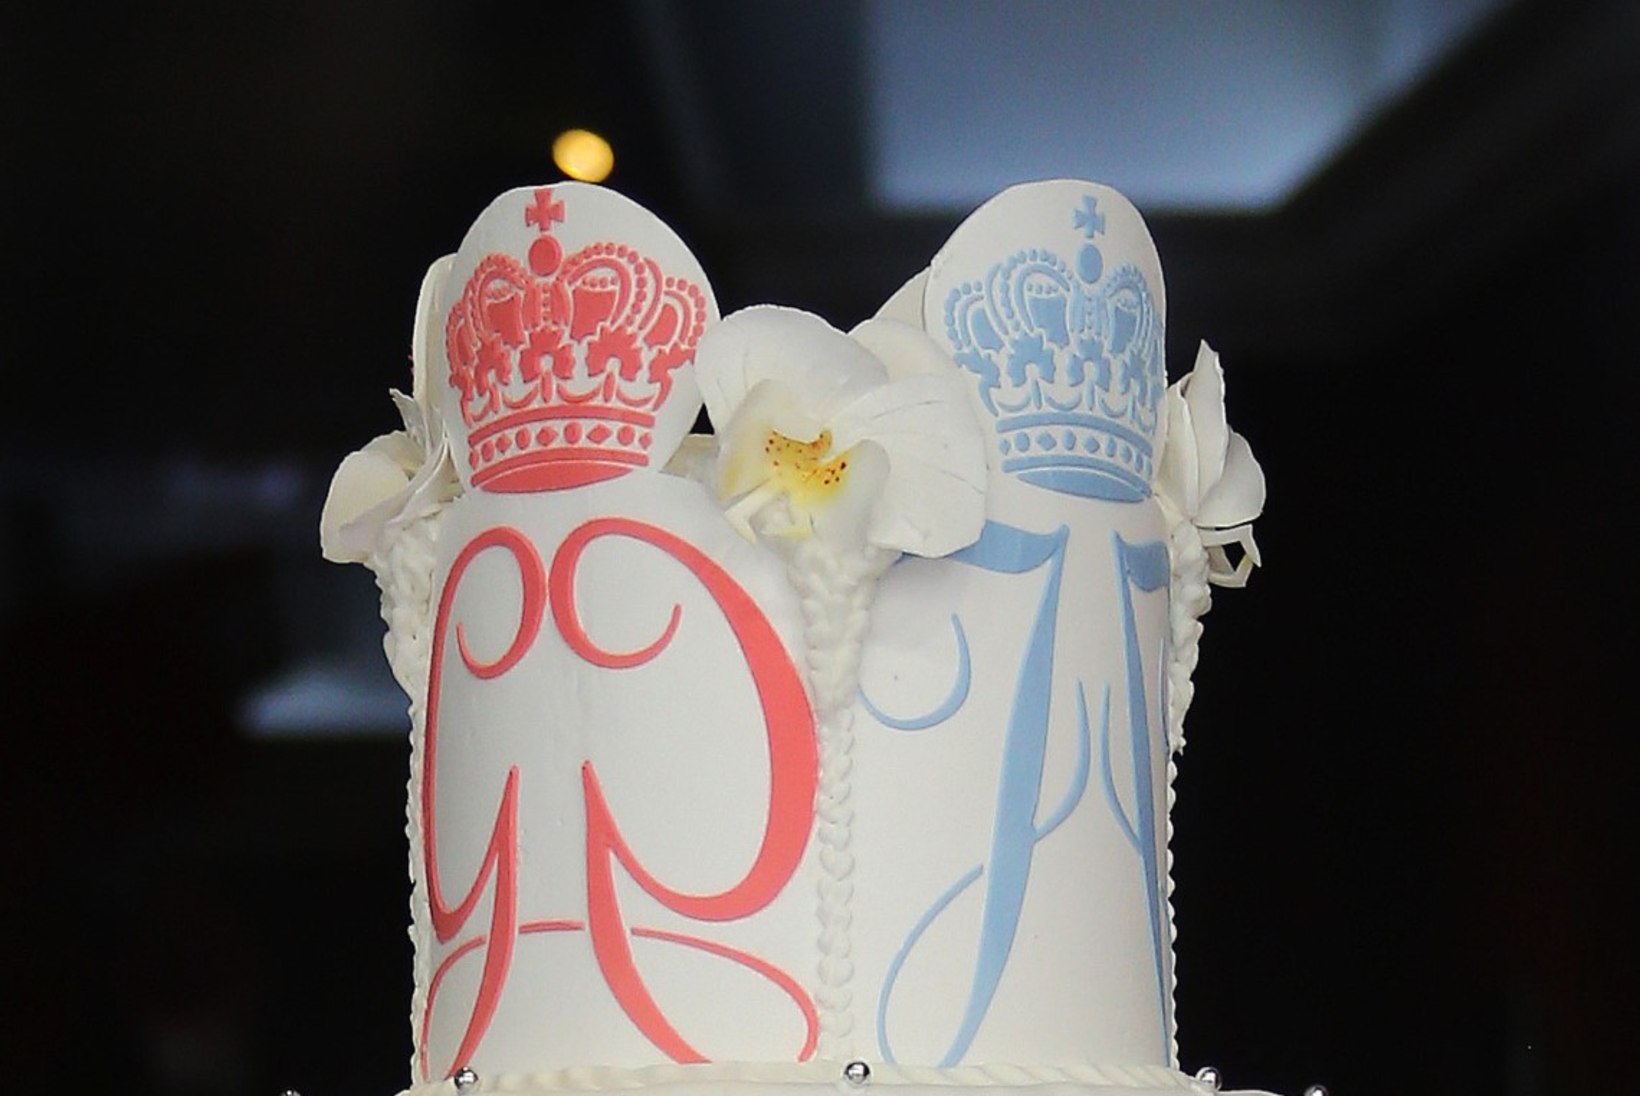 FOTOD | Monaco printsile ja printsessile küpsetati ristimispeoks kuninglik tort!